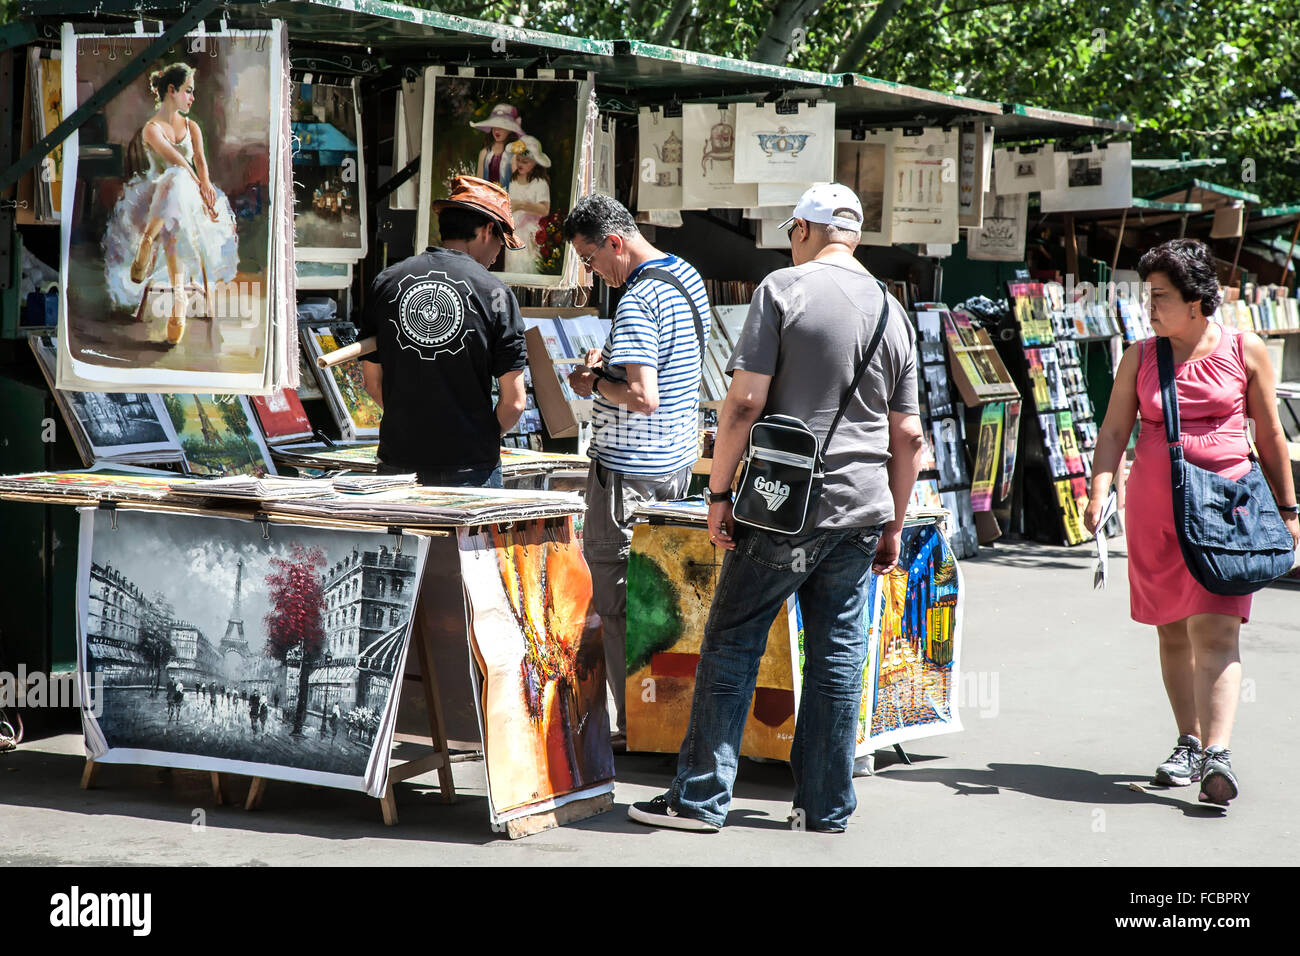 Shoppers and souvenir vendors, Paris, France Stock Photo